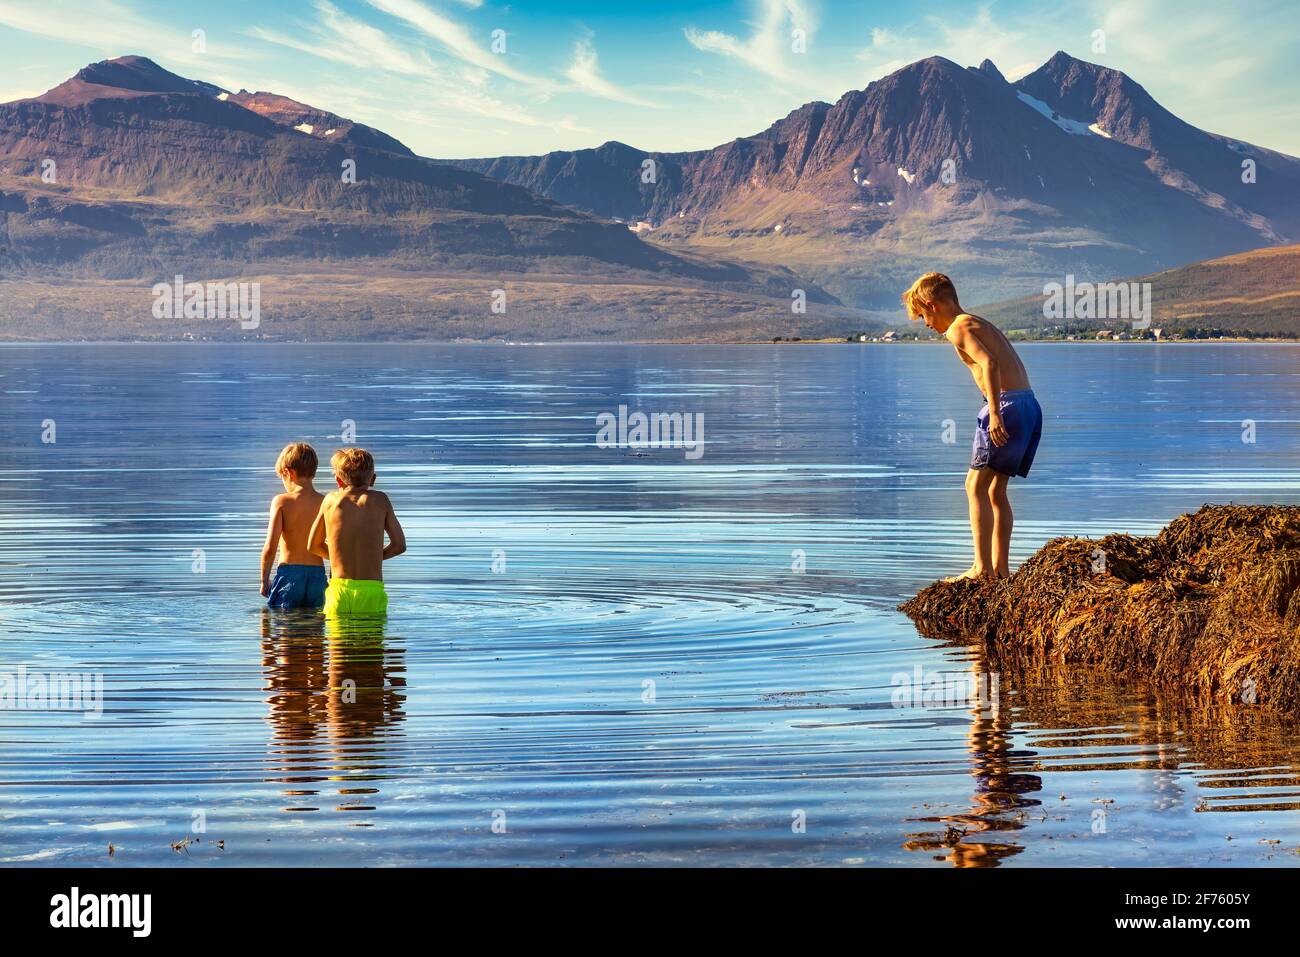 Tromso, Norvège - 18 août 2016 : deux garçons prennent un bain dans l'eau froide de Tromso, à 350 km au nord du cercle arctique Banque D'Images